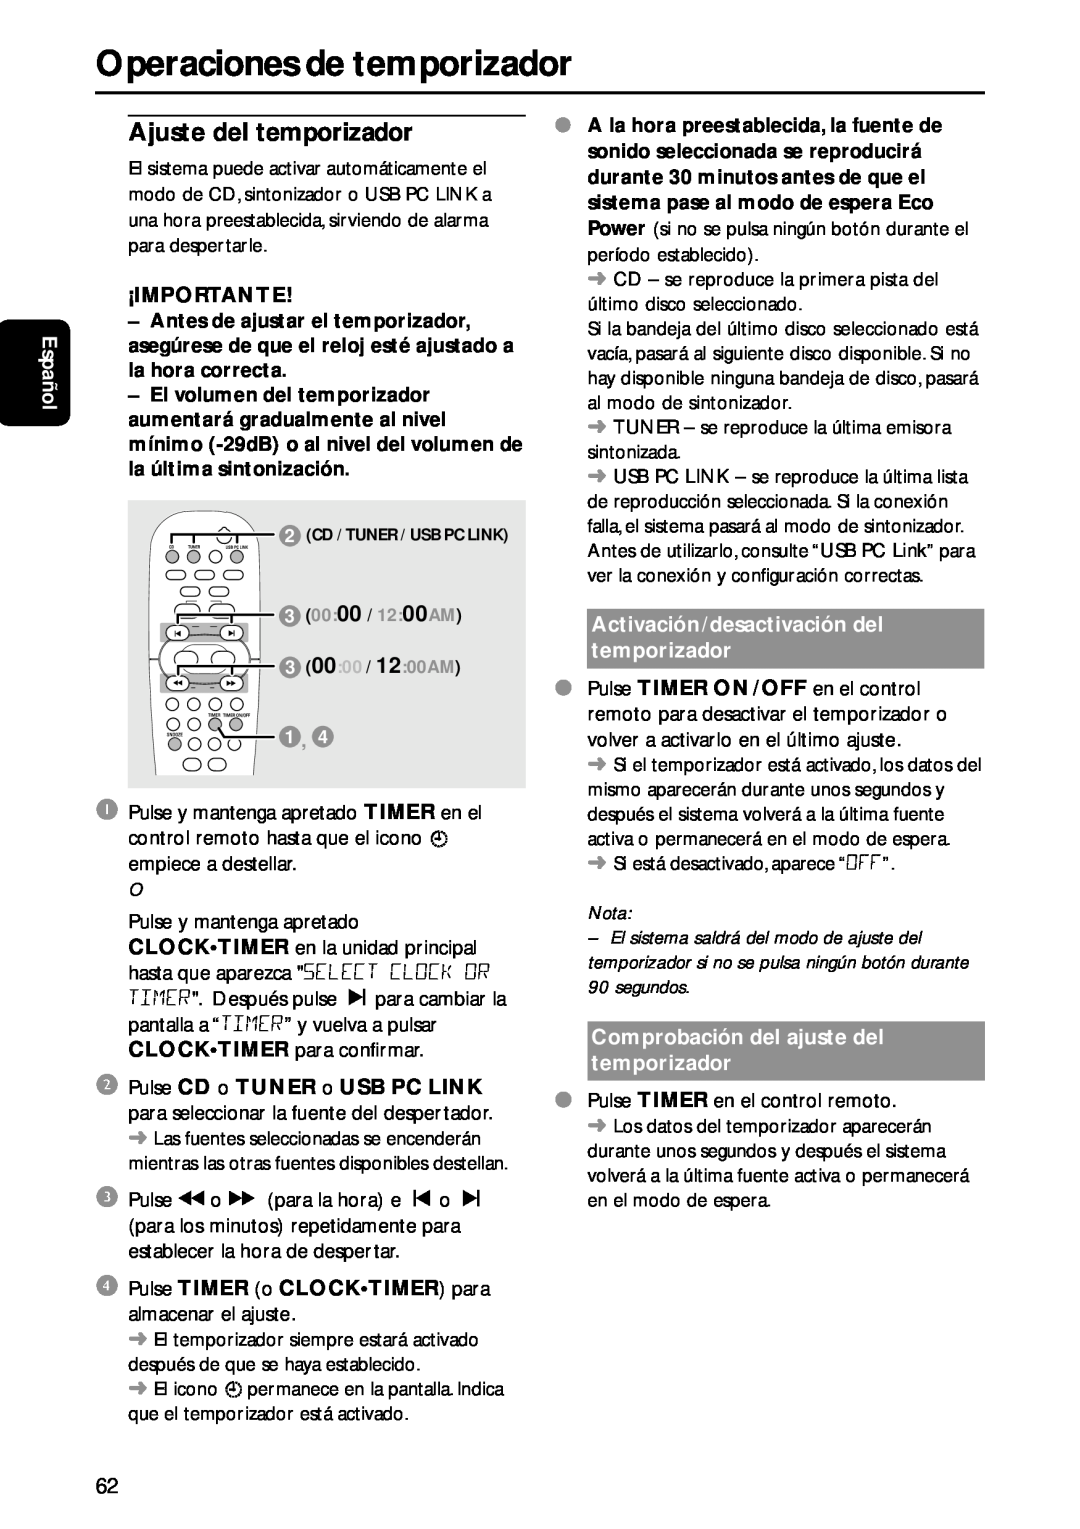 Philips MC-M570 manual Operaciones de temporizador, Español, ¡Importante, Activación/desactivación del temporizador, Nota 